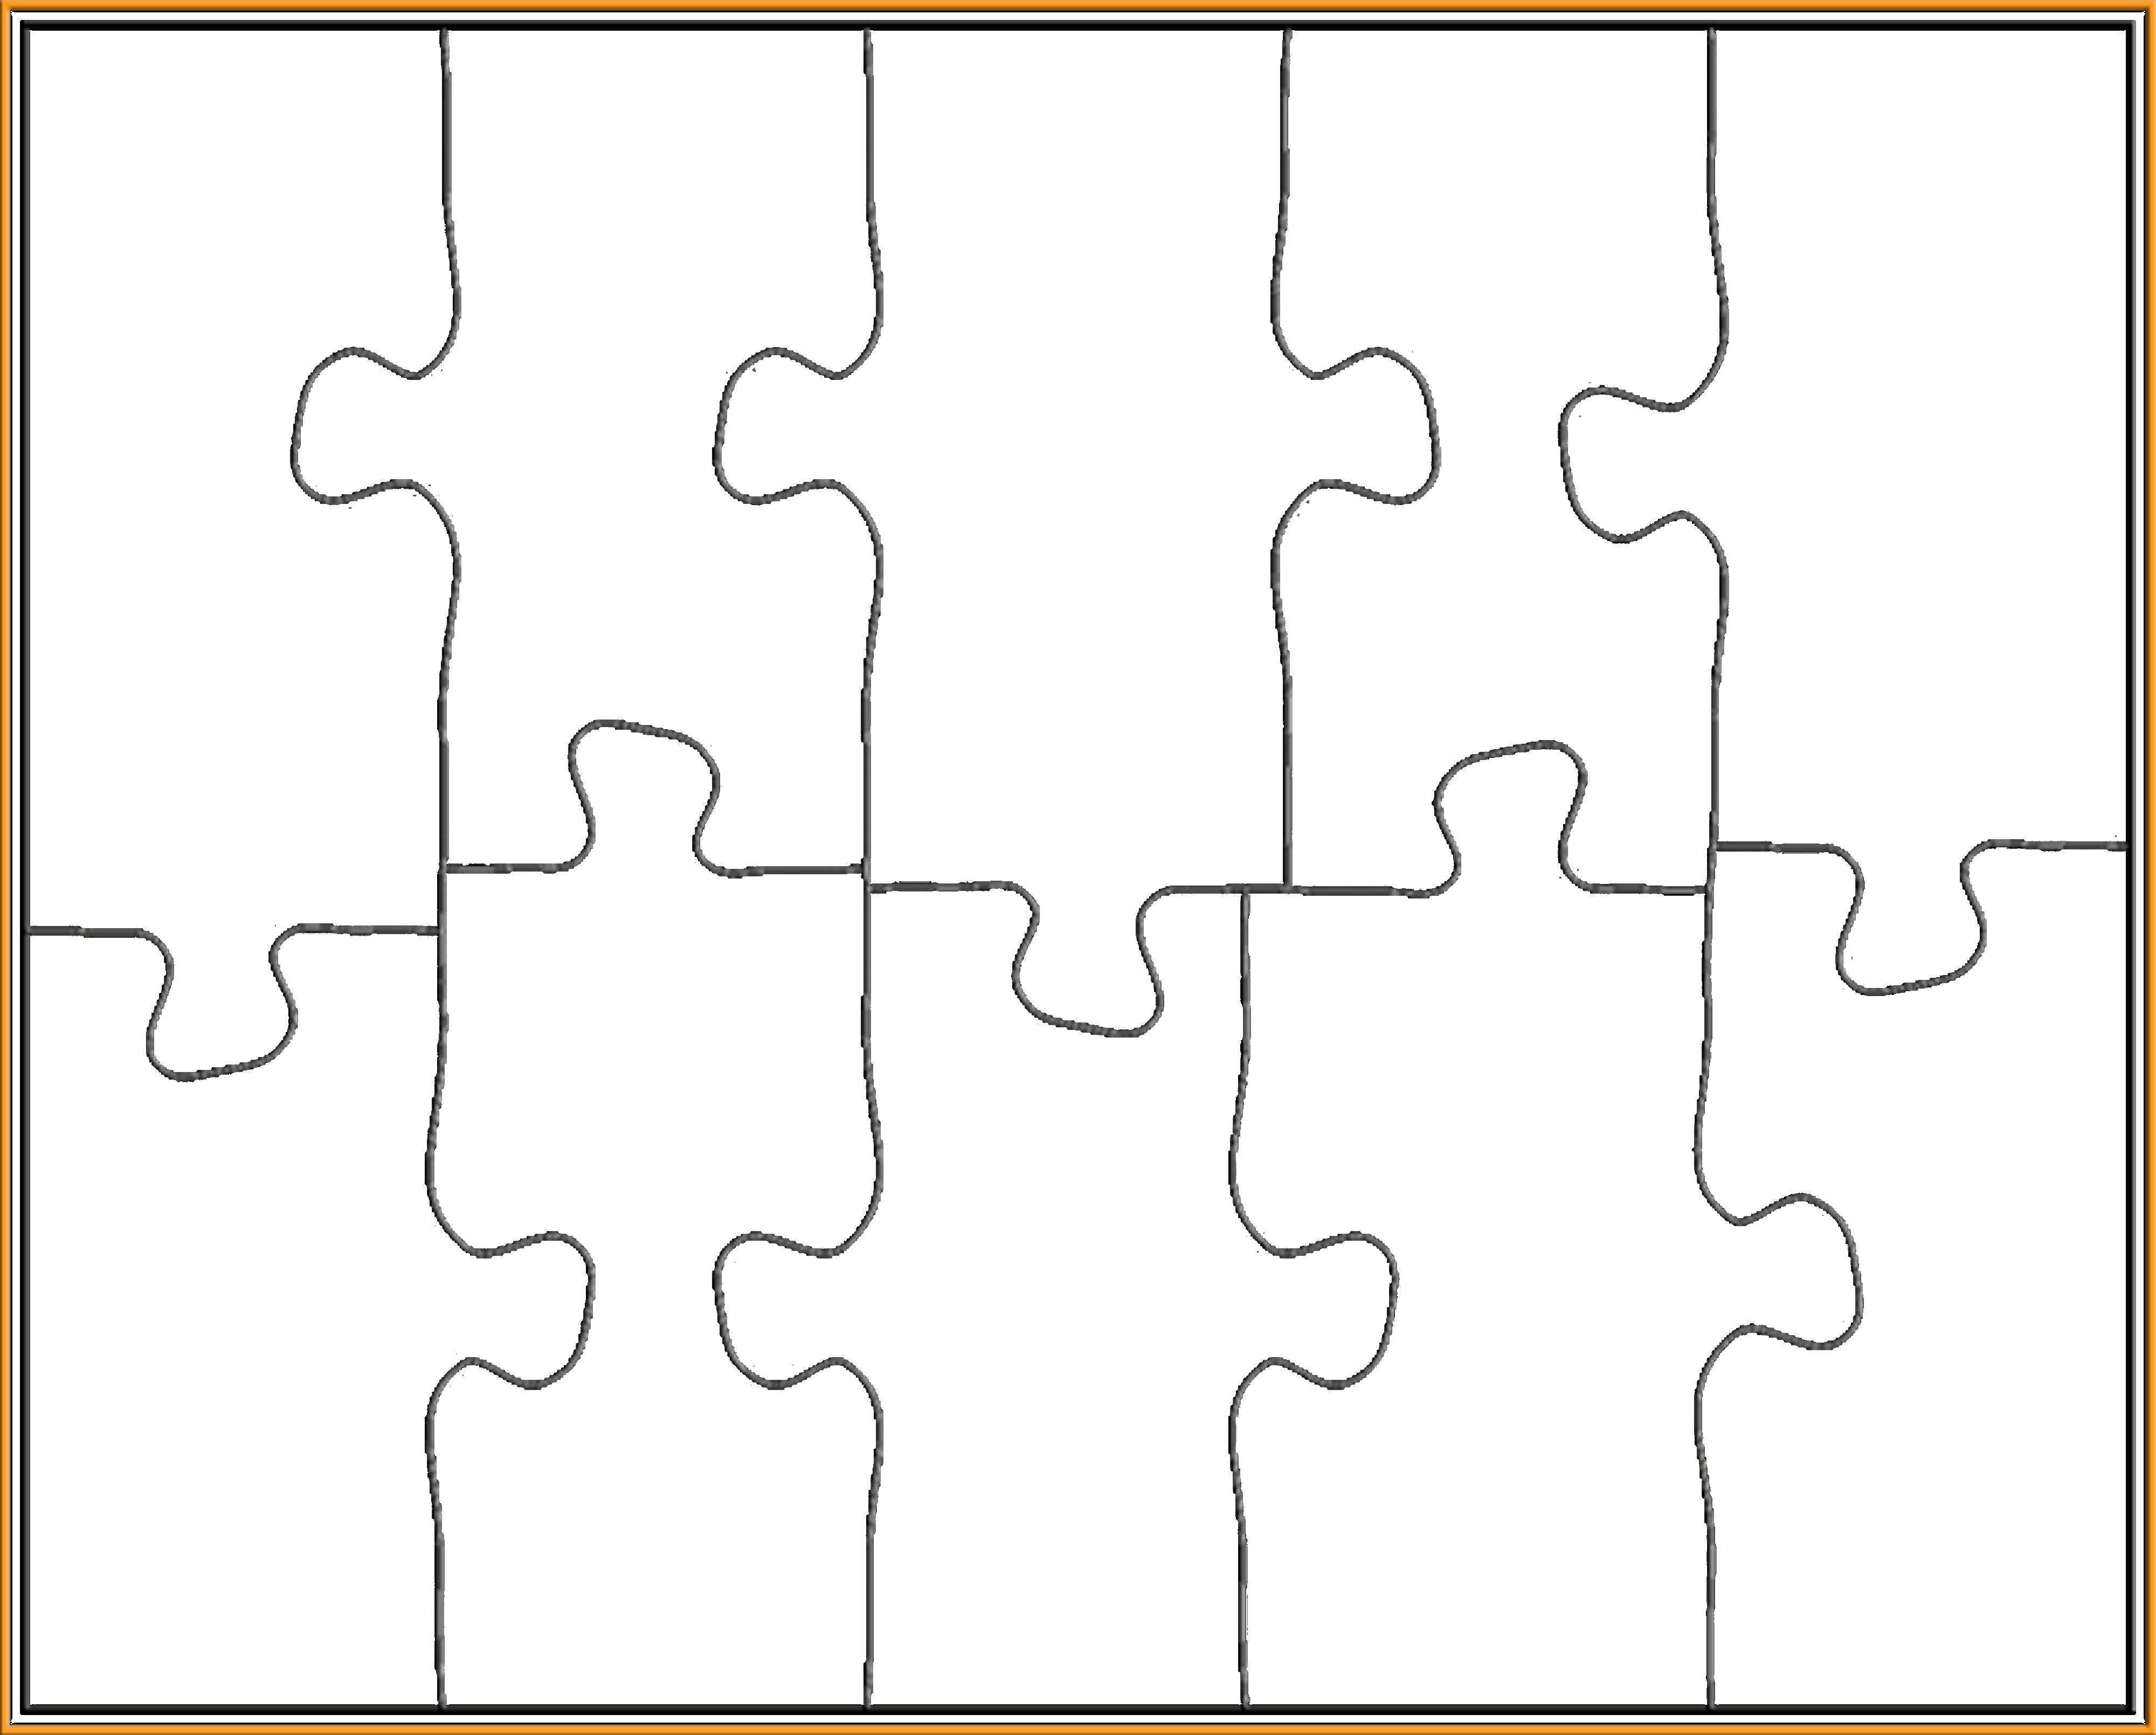 8 Piece Puzzle Template Beautiful 25 Best Ideas About Puzzle Piece Template On Pinterest Peterainsworth Puzzle Piece Template Puzzle Piece Crafts Templates